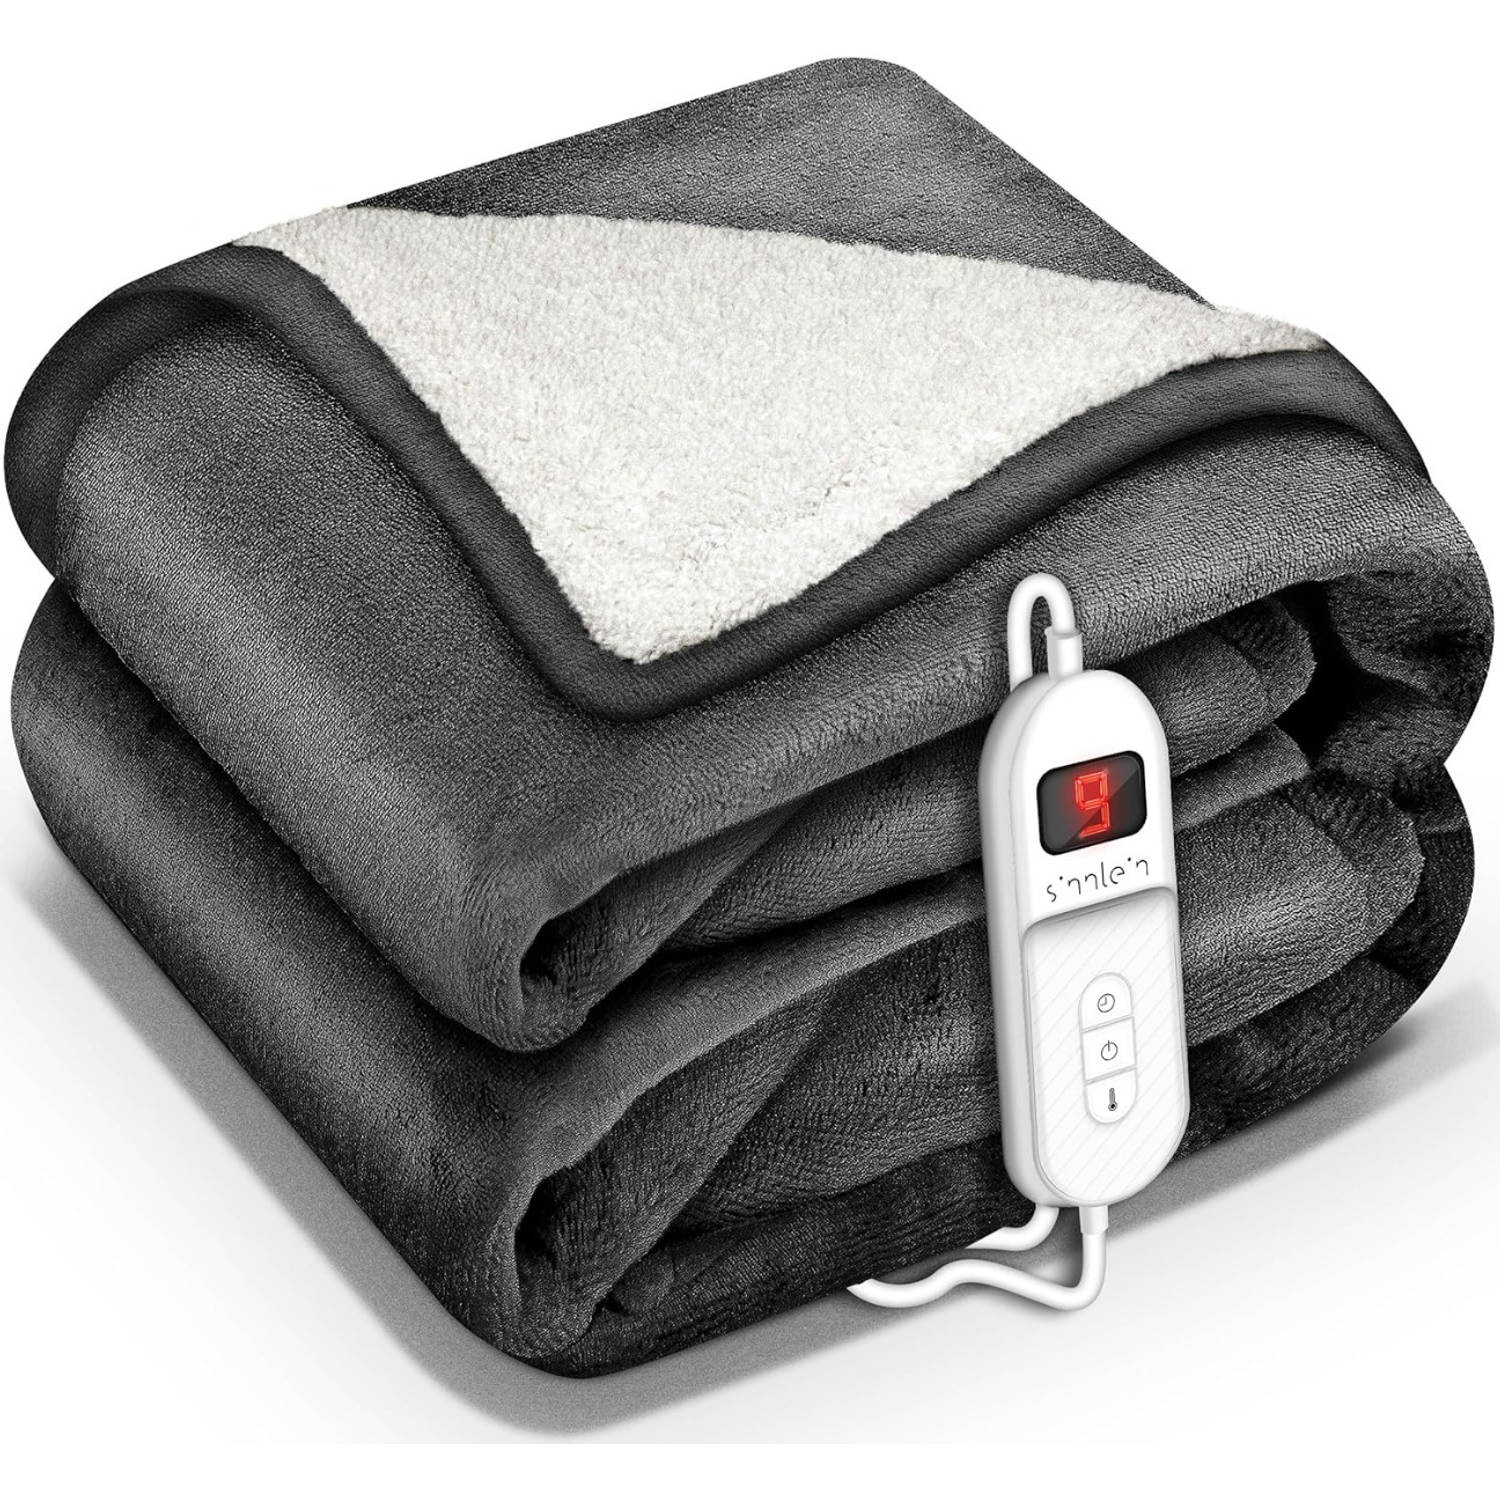 Sinnlein- Elektrische deken met automatische uitschakeling, antraciet, 180x130 cm, warmtedeken met 9 temperatuurniveaus, knuffeldeken, wasbaar